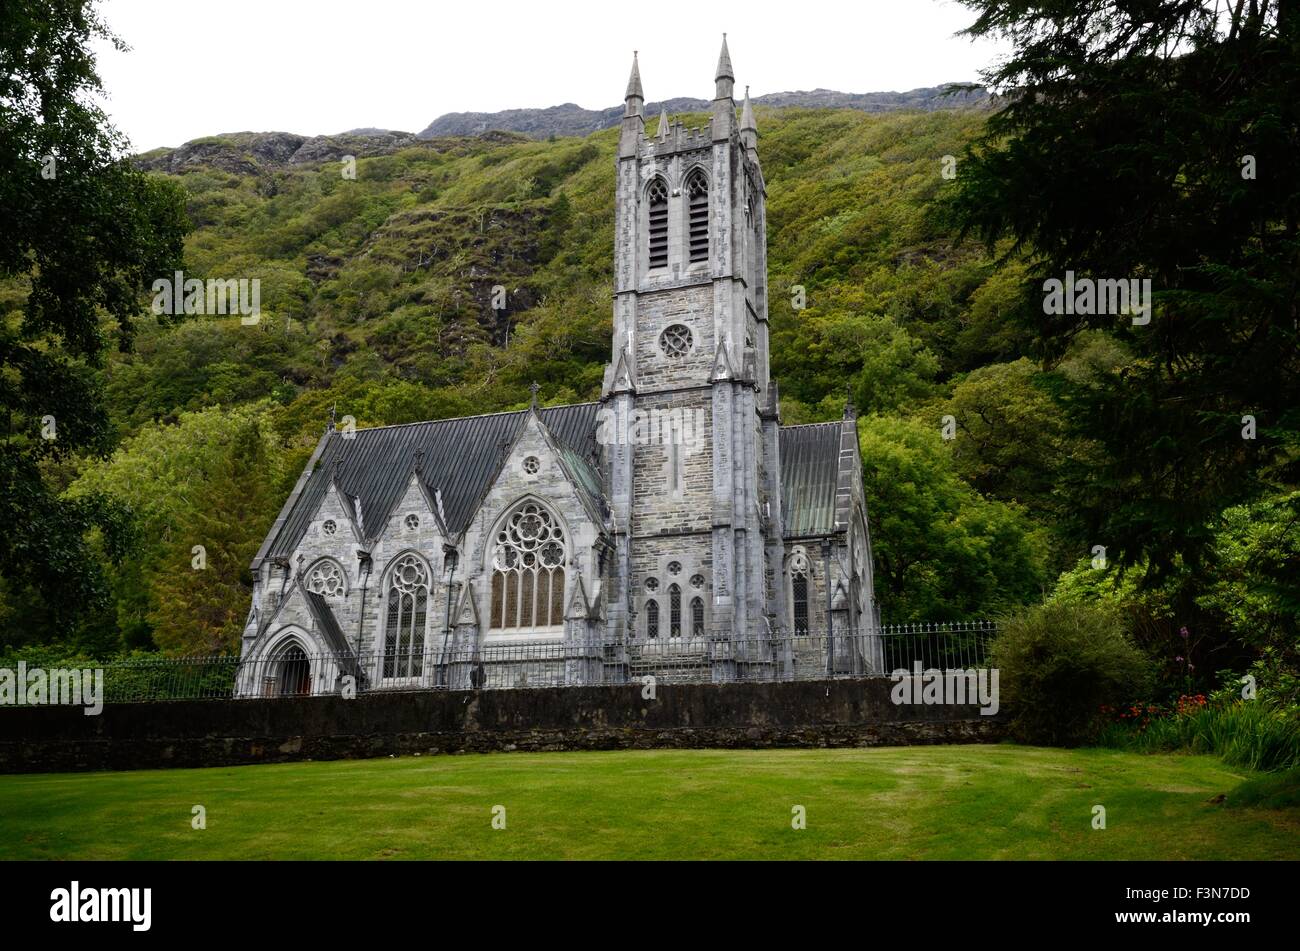 Miniatura neo gótica Iglesia de la abadía de Kylemore Connemara, Condado de Galway, Irlanda Foto de stock